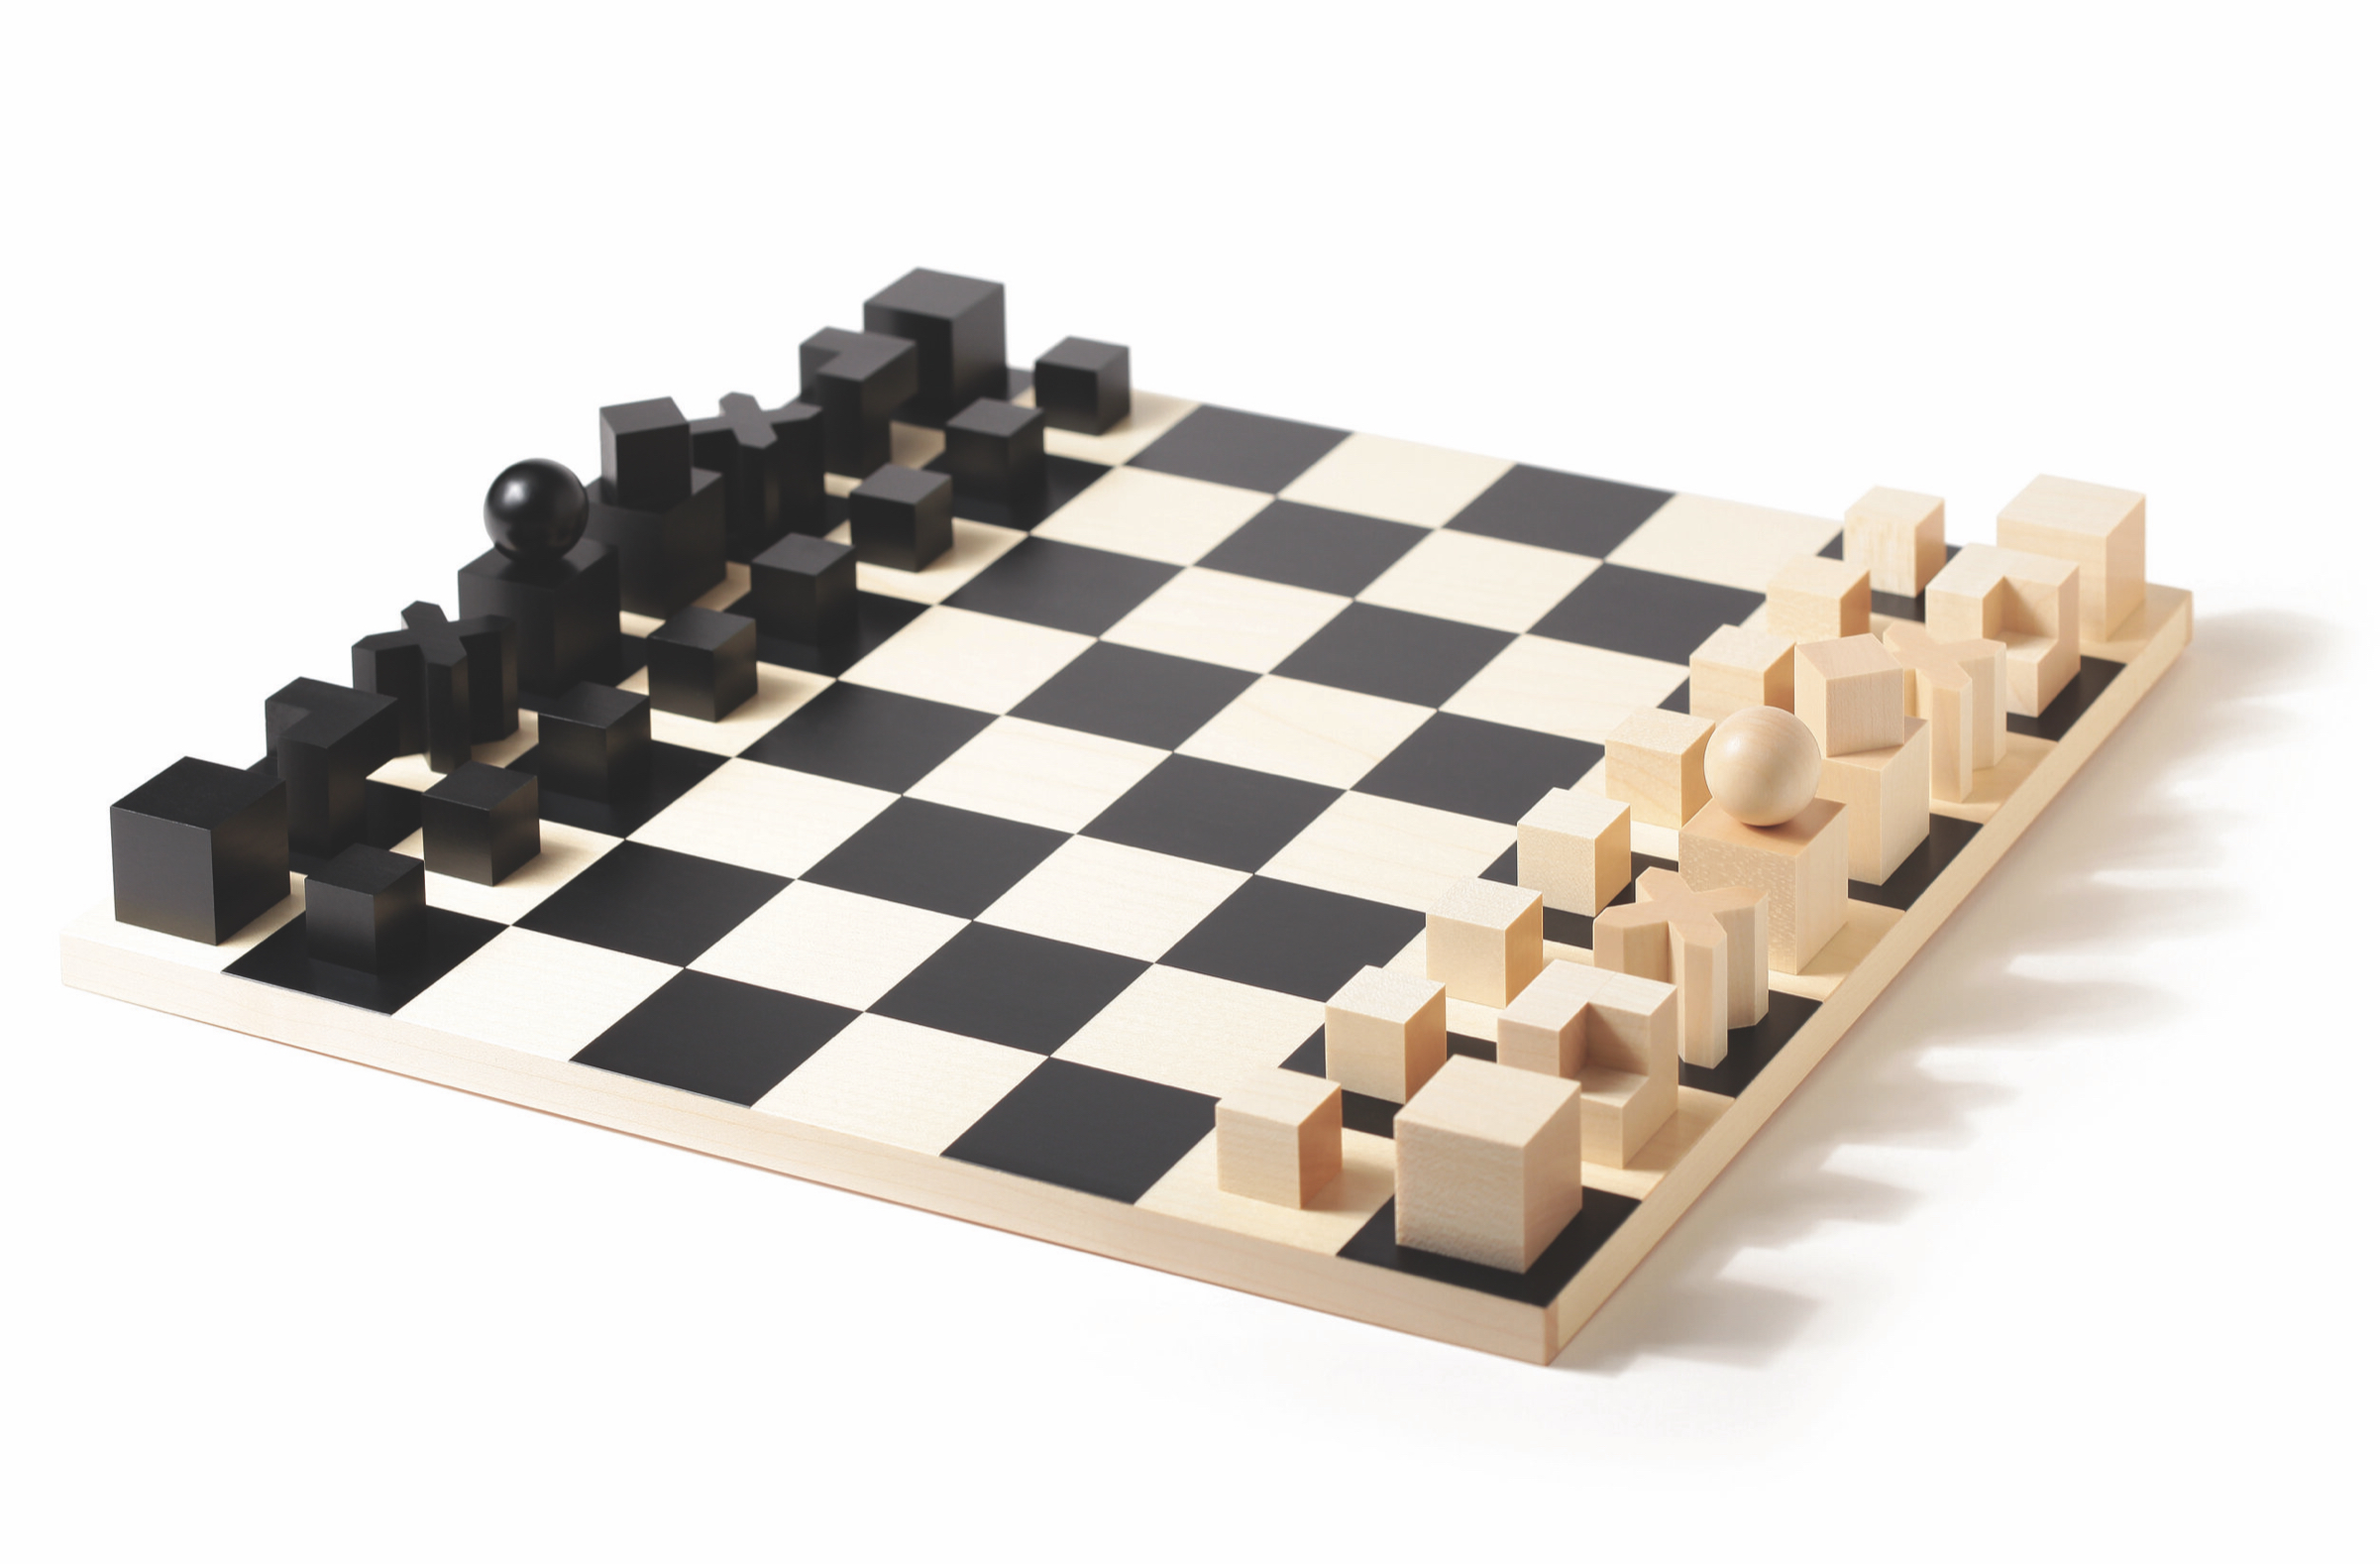 Bauhaus chess by Naef